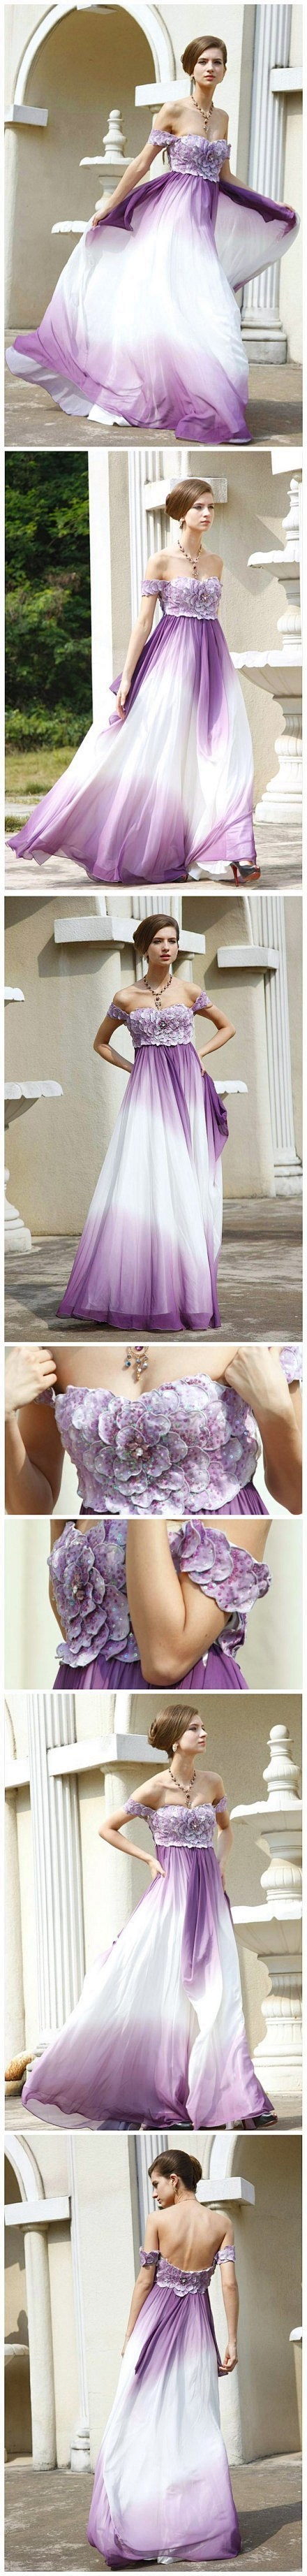 紫色+环肩+花瓣 婚纱礼服~~